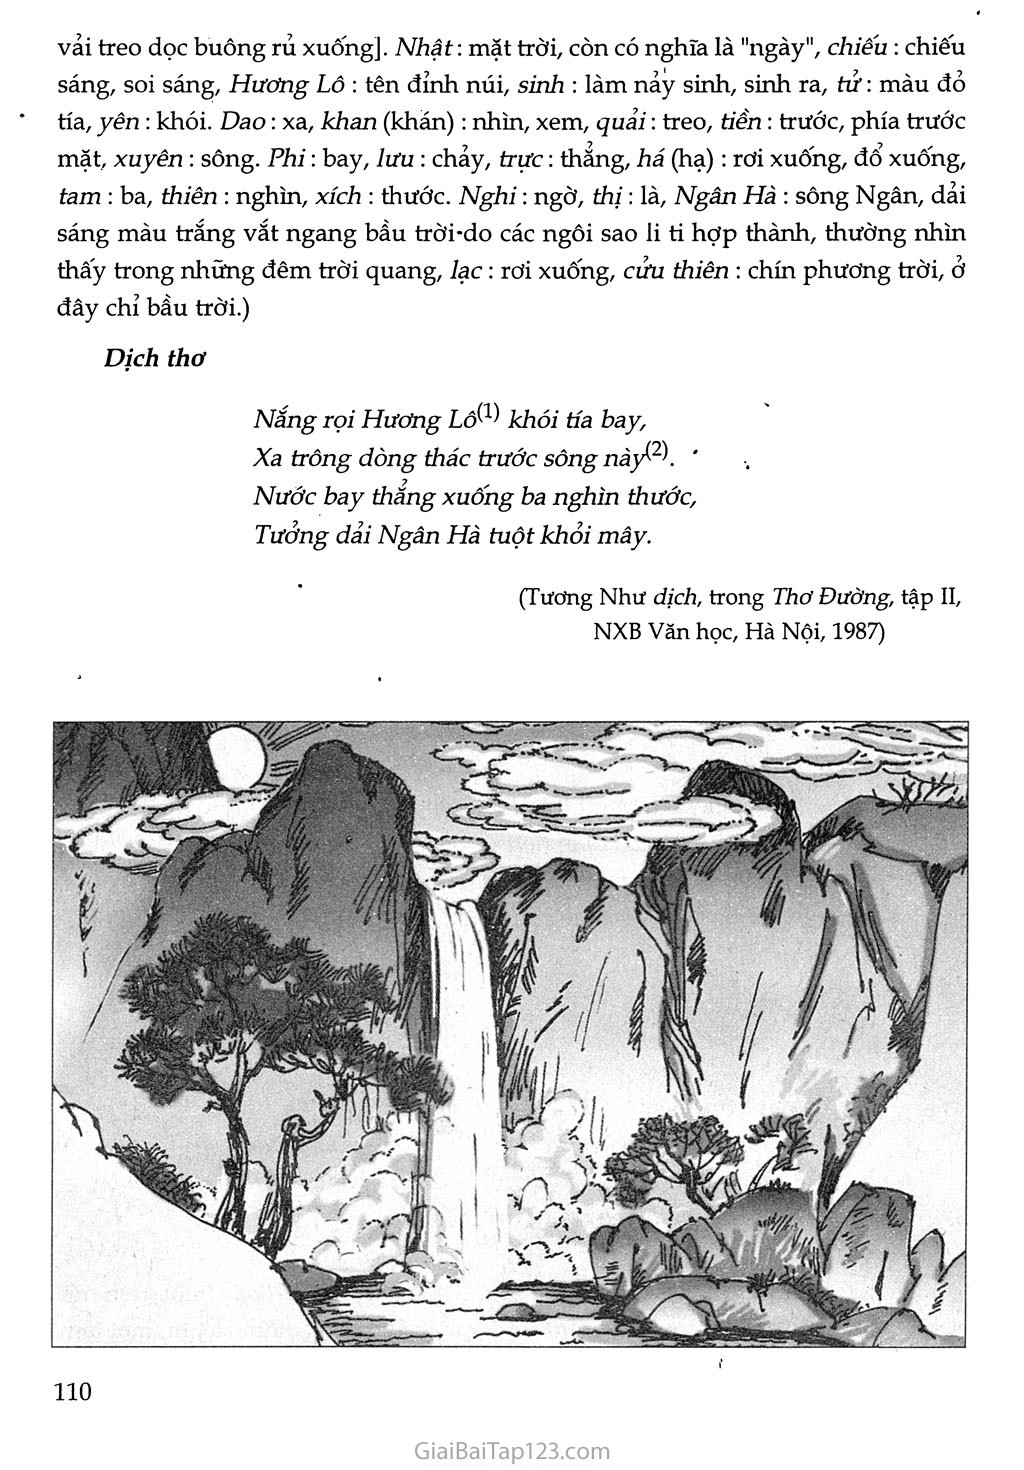 Xa ngắm thác núi Lu (Vọng Lư sơn bộc bố) trang 2